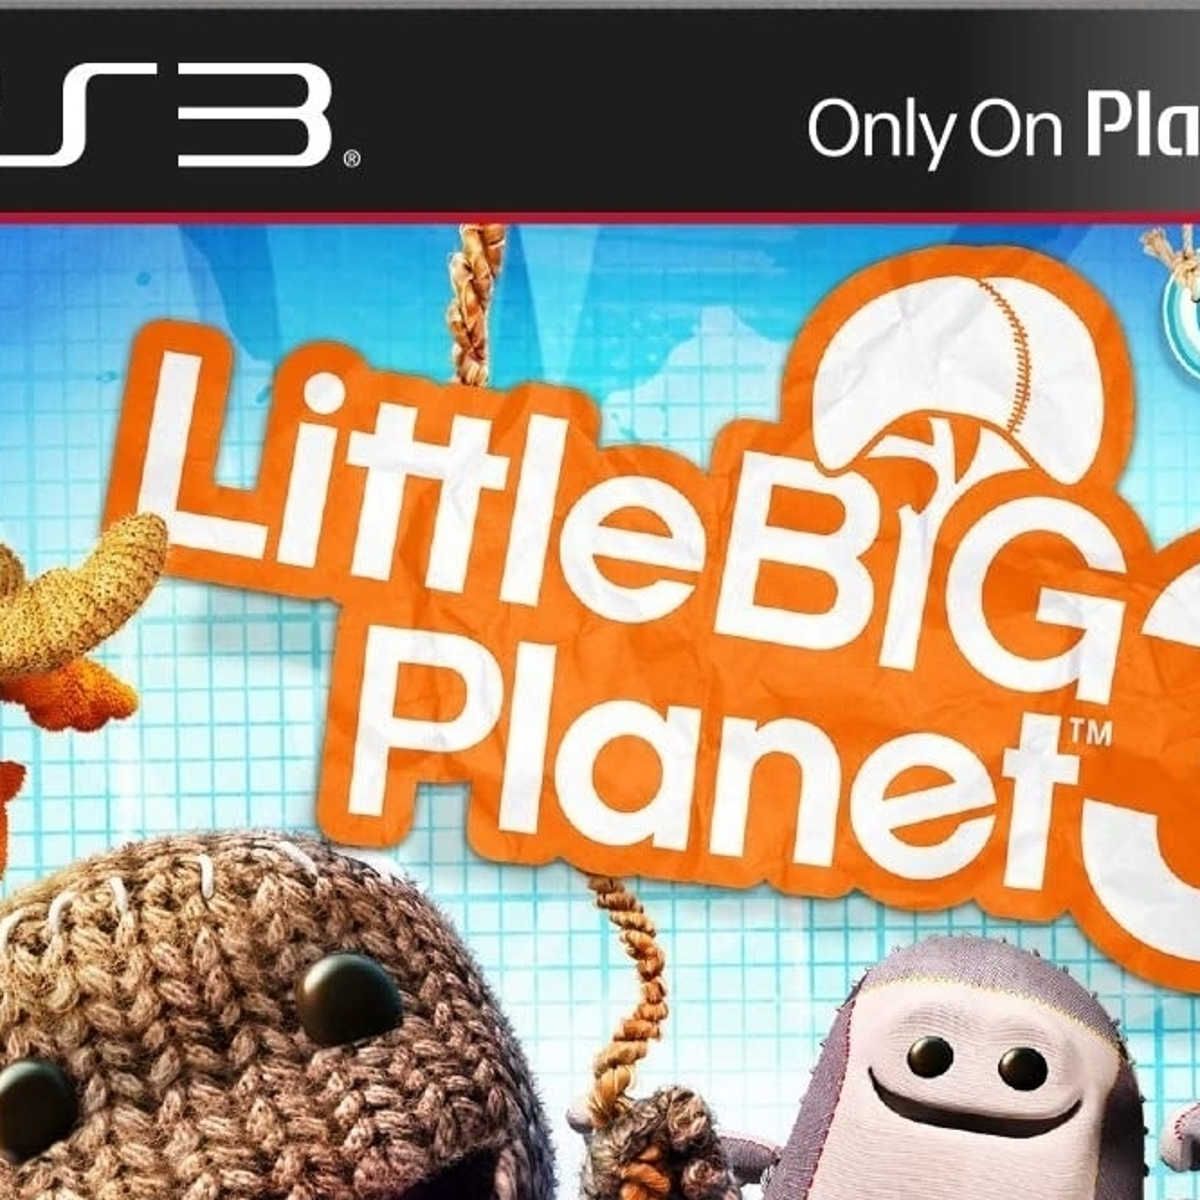 amplitude Regelmatigheid aantrekkelijk Sony shuts down online for older LittleBigPlanet games "to protect the  community" | Eurogamer.net